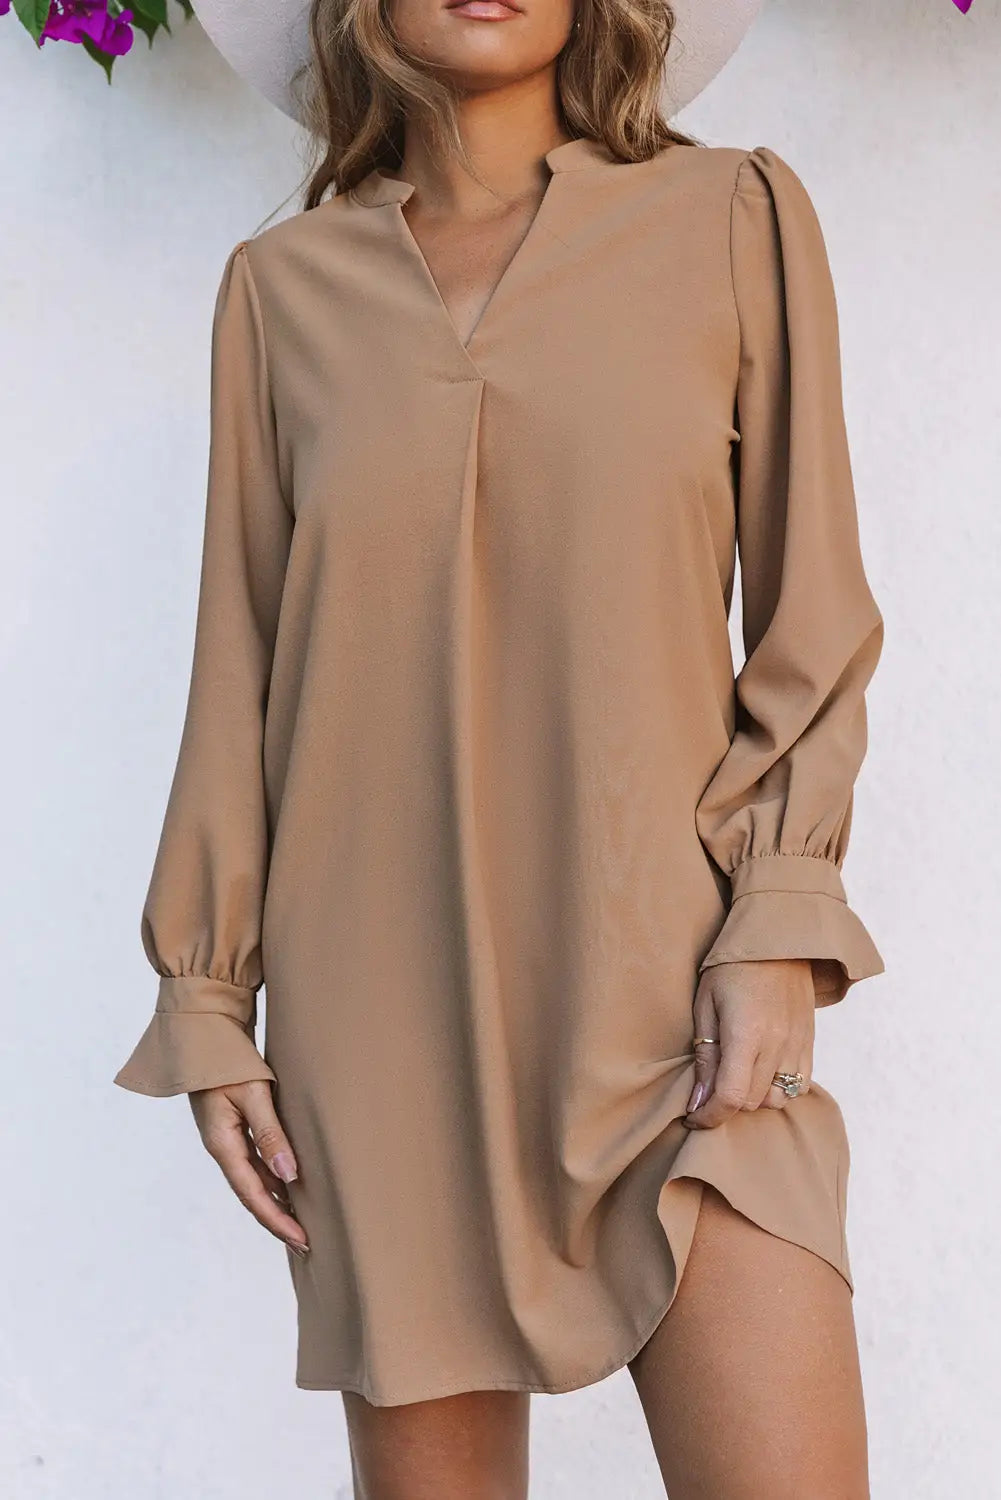 Shirt dress - green split v neck ruffled sleeves - apricot / s / 100% polyester - mini dresses